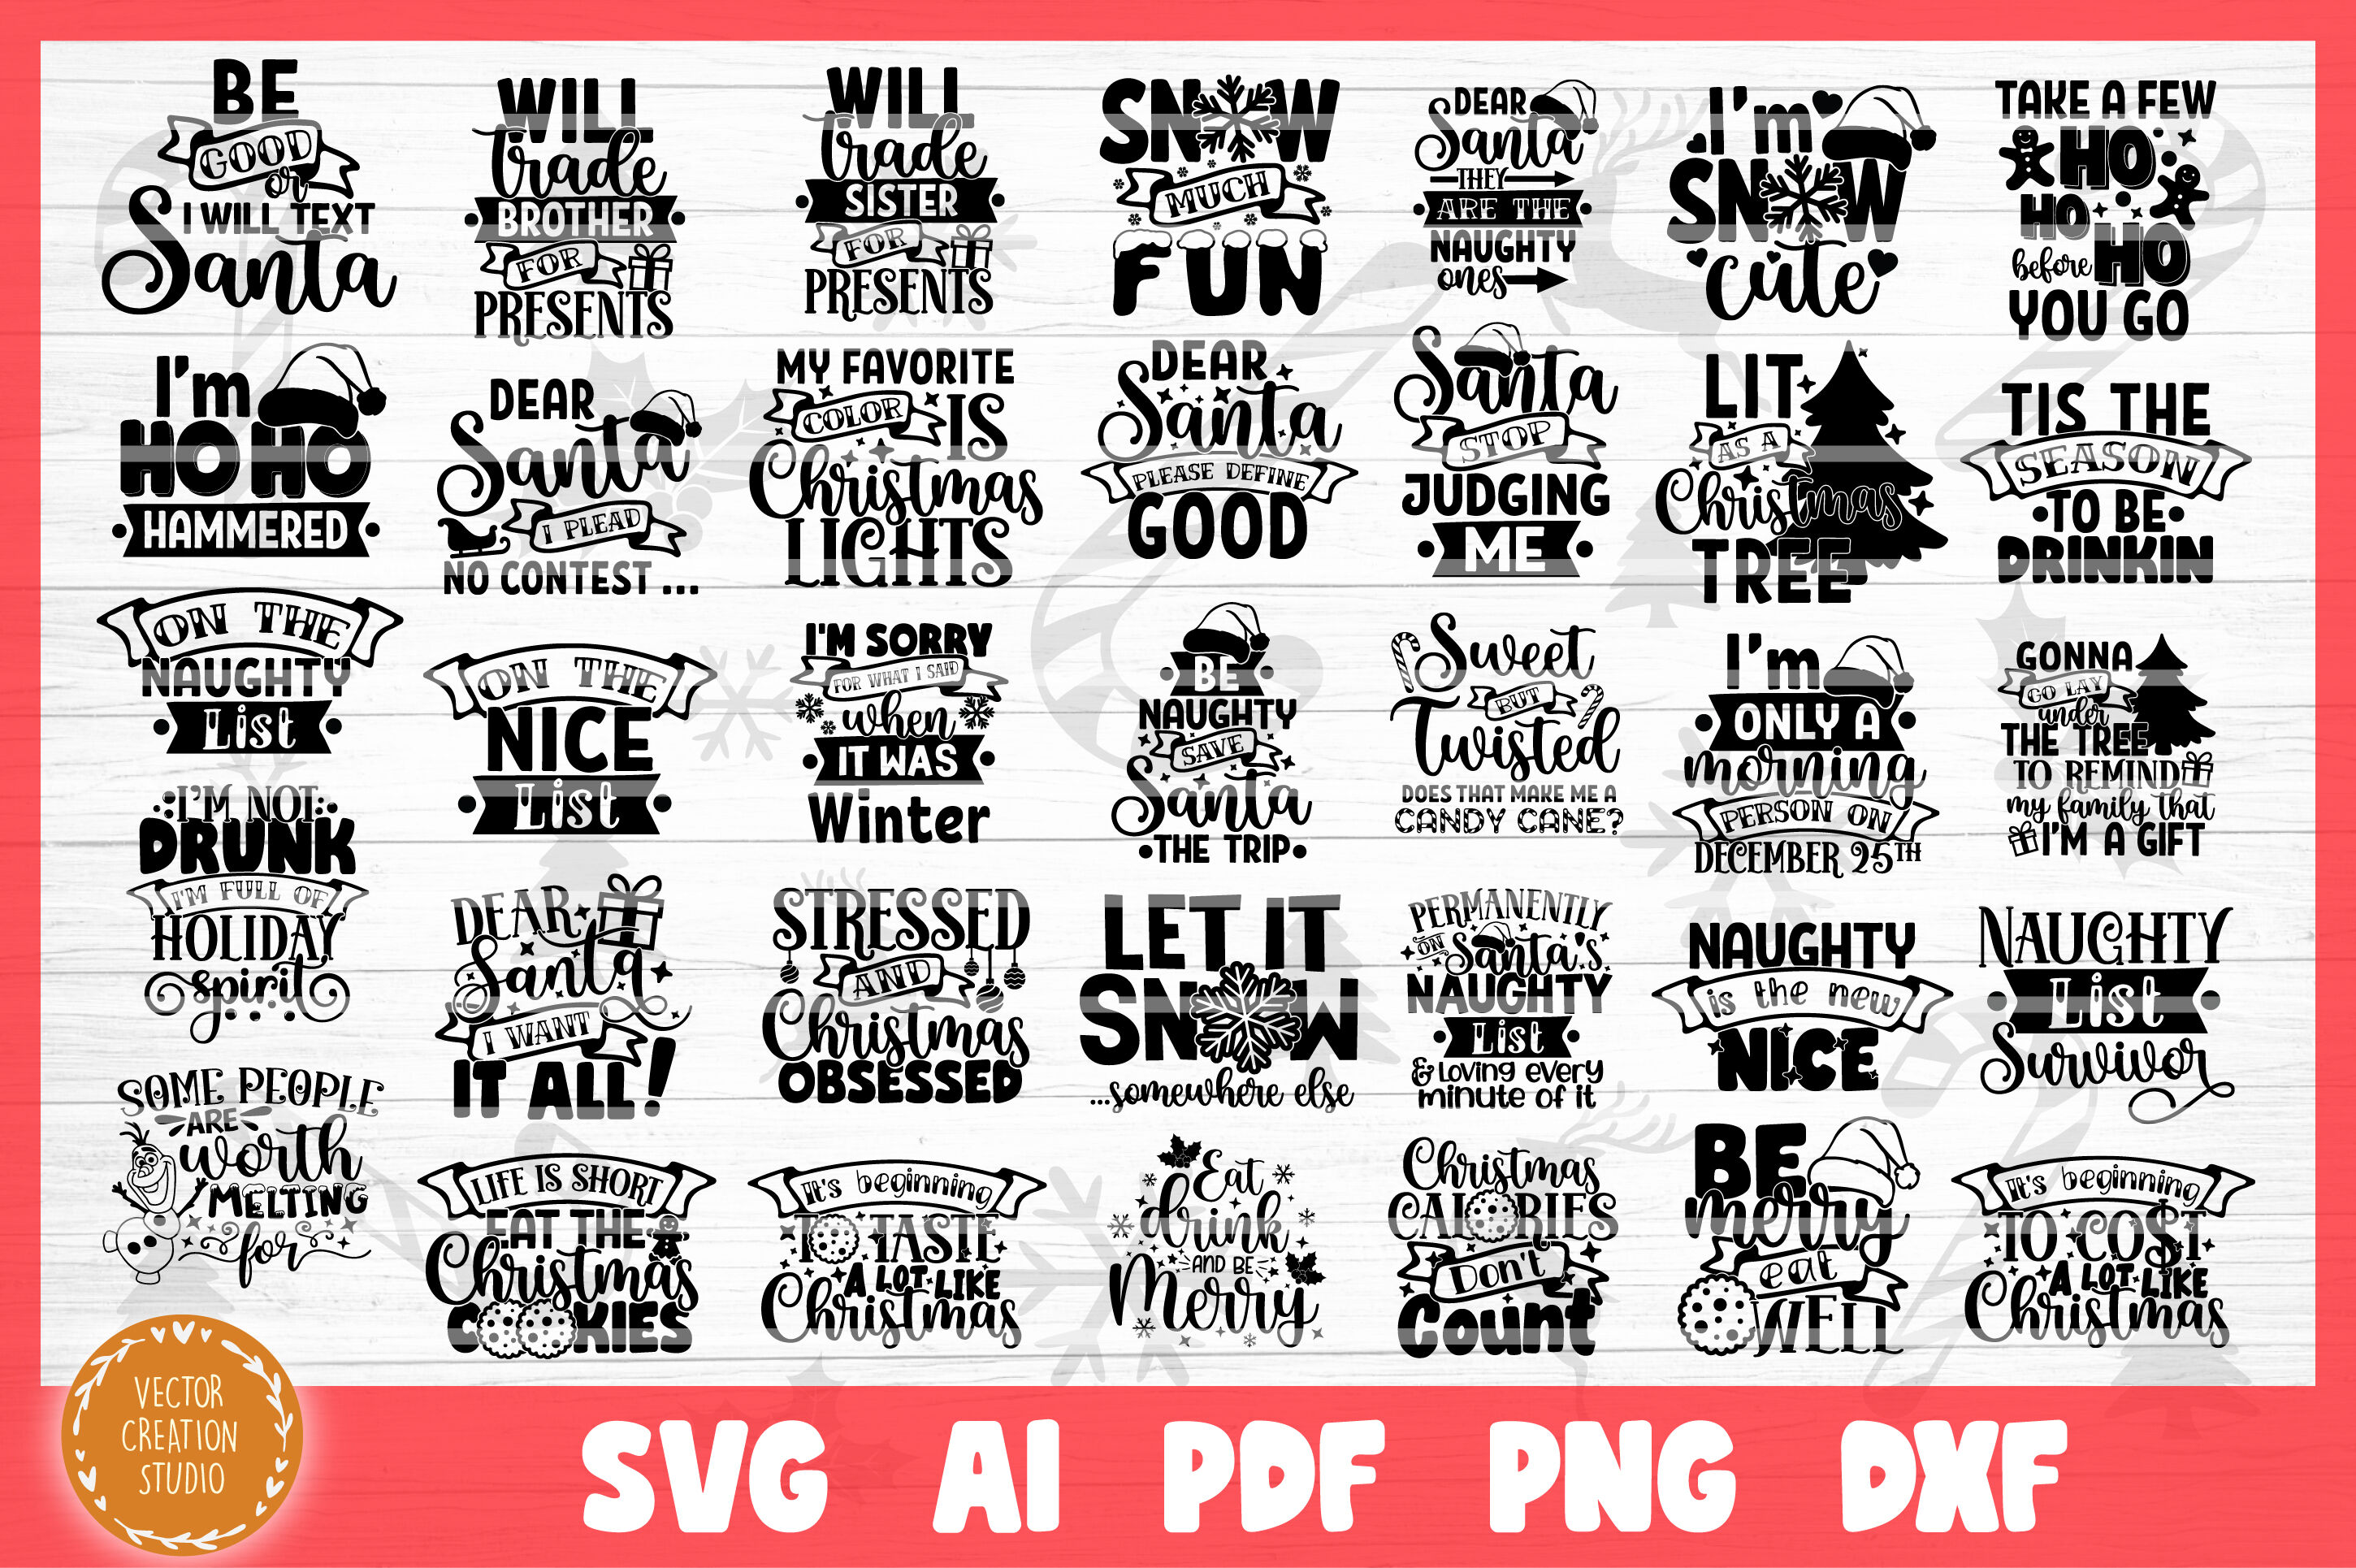 Funny Christmas SVG Bundle Cut Files By VectorCreationStudio